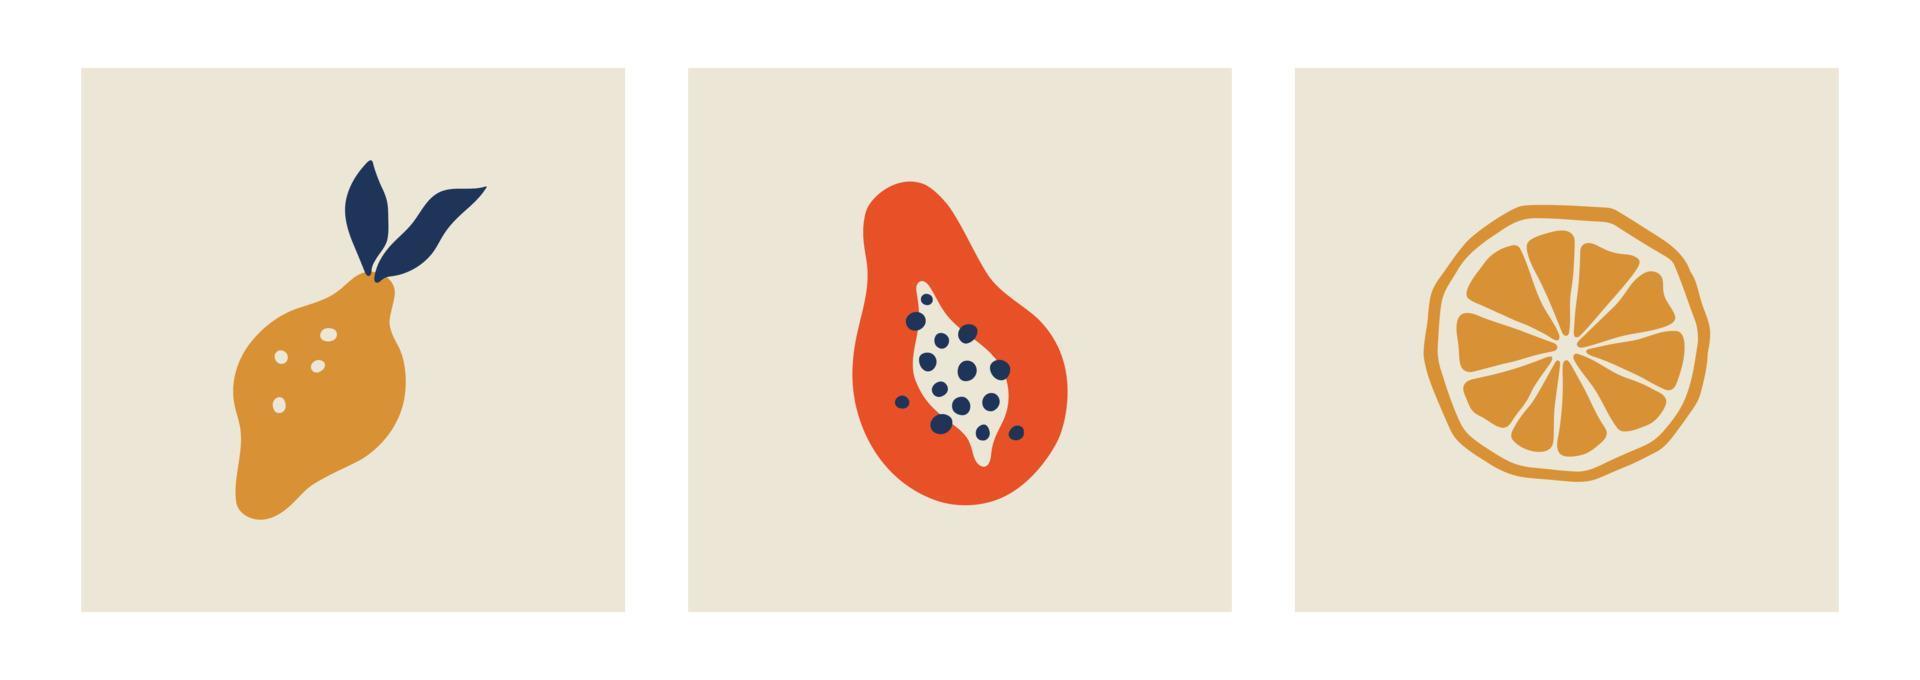 Matisse astratto di limone e papaia. stampa d'arte contemporanea. collezione di arte minimalista. poster con gocce di frutta biologica. illustrazione vettoriale isolata.